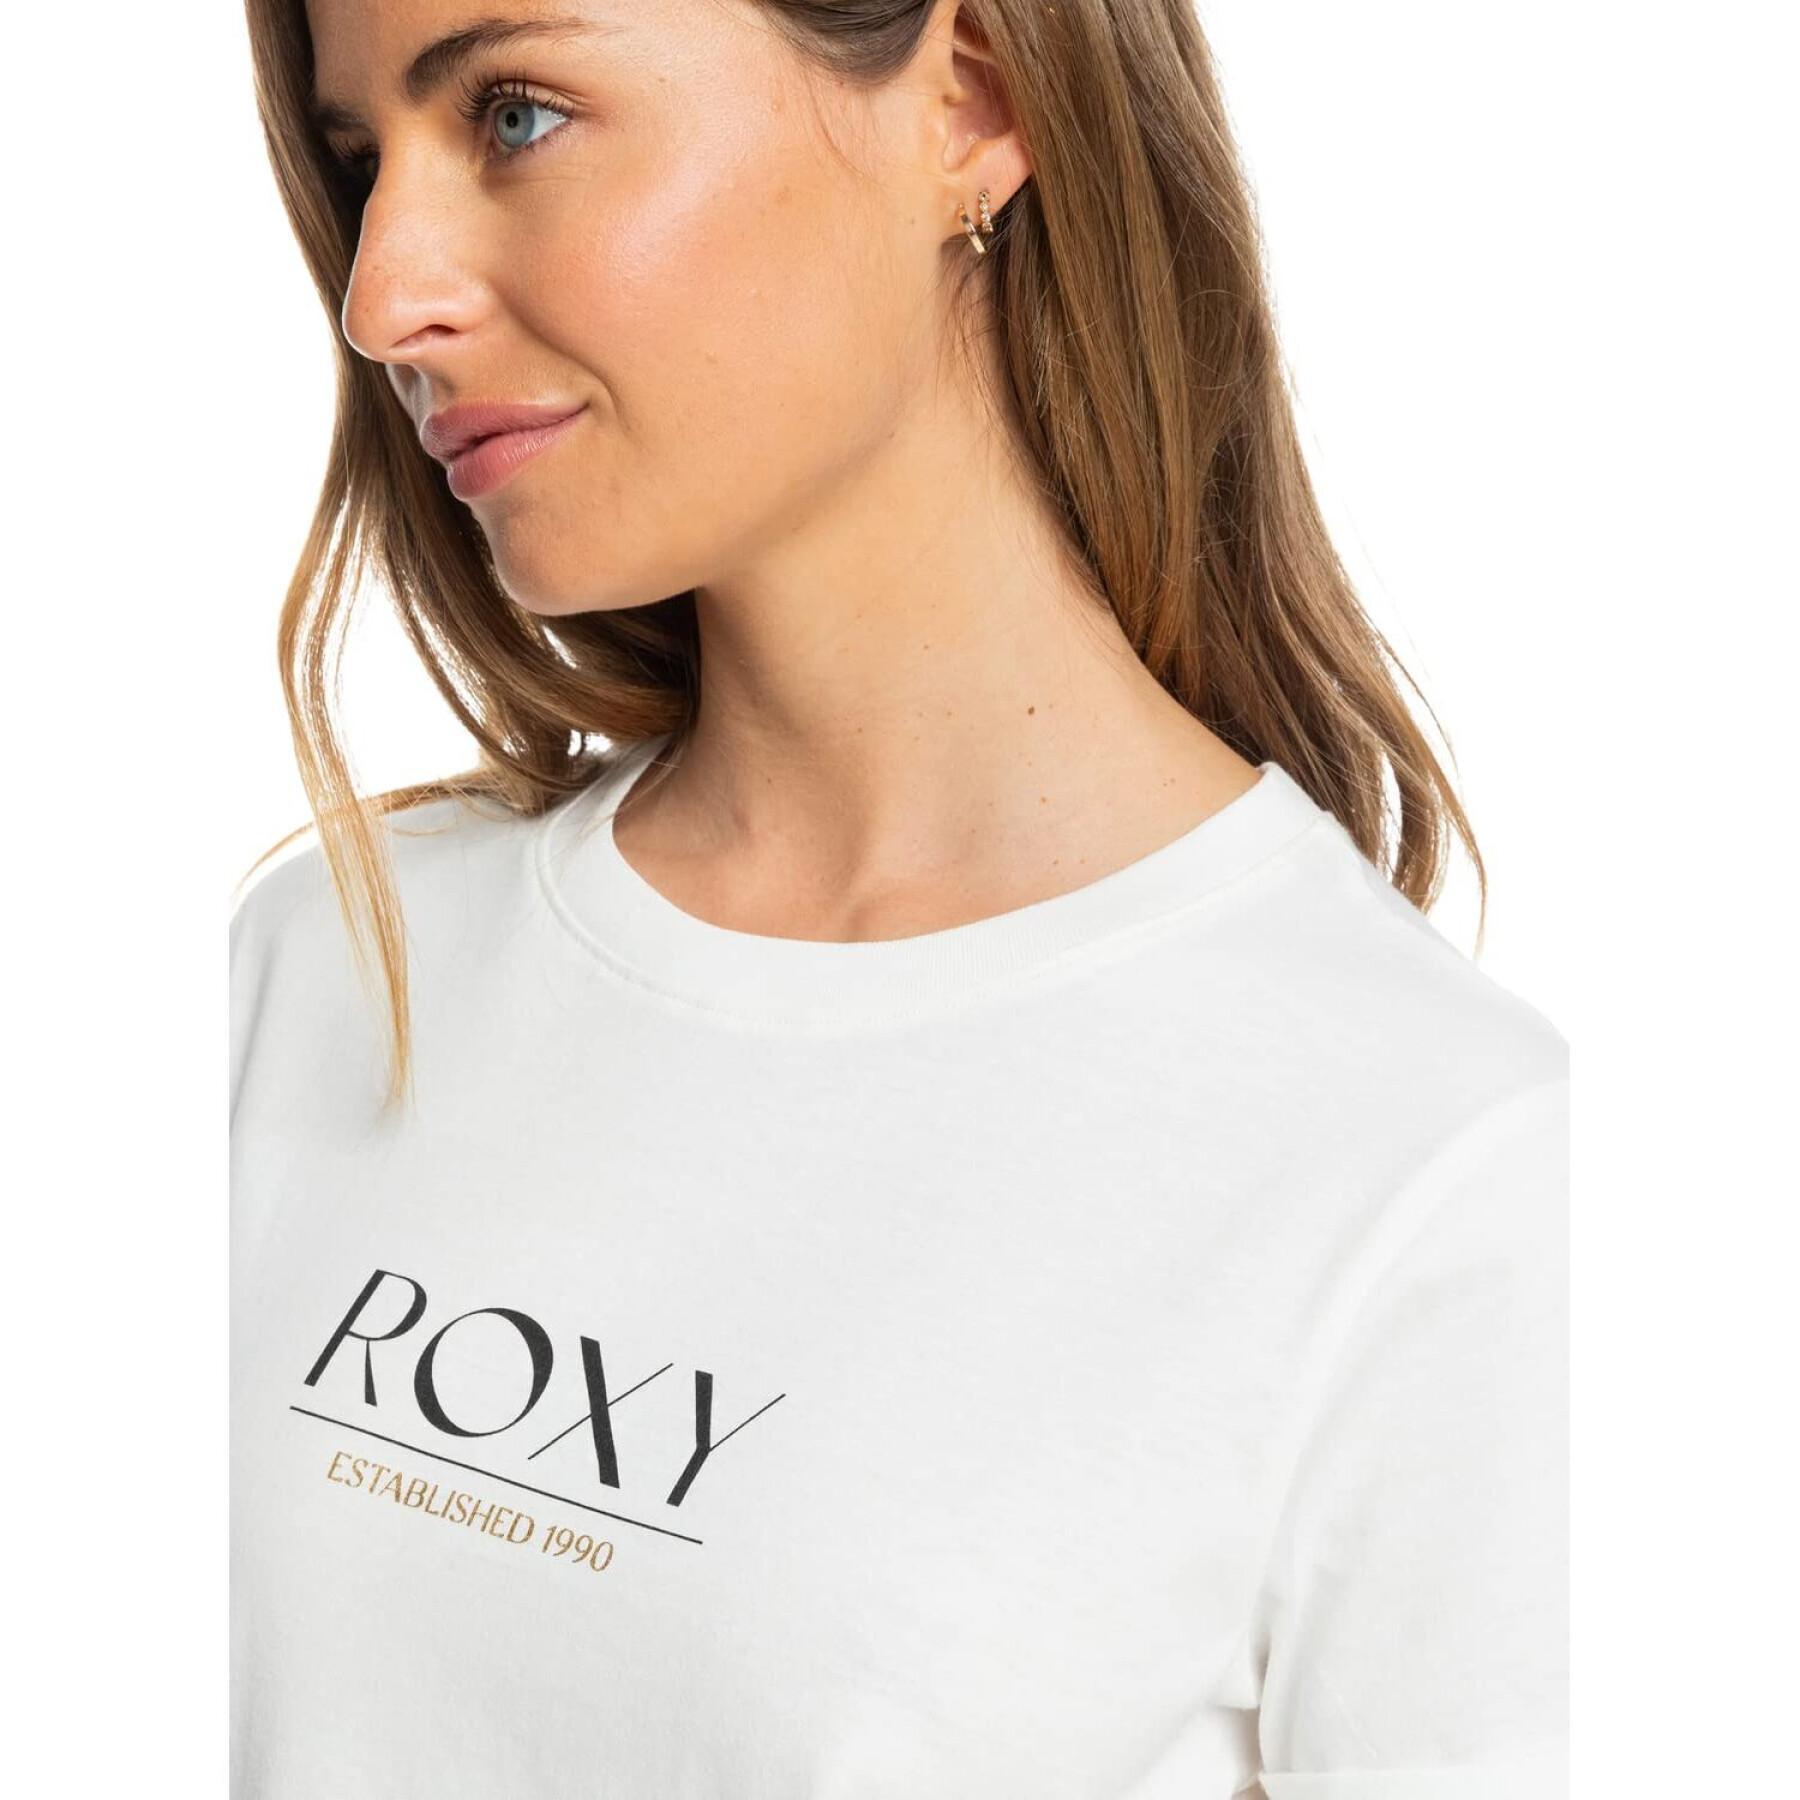 Camiseta de mujer Roxy Noon Ocean A